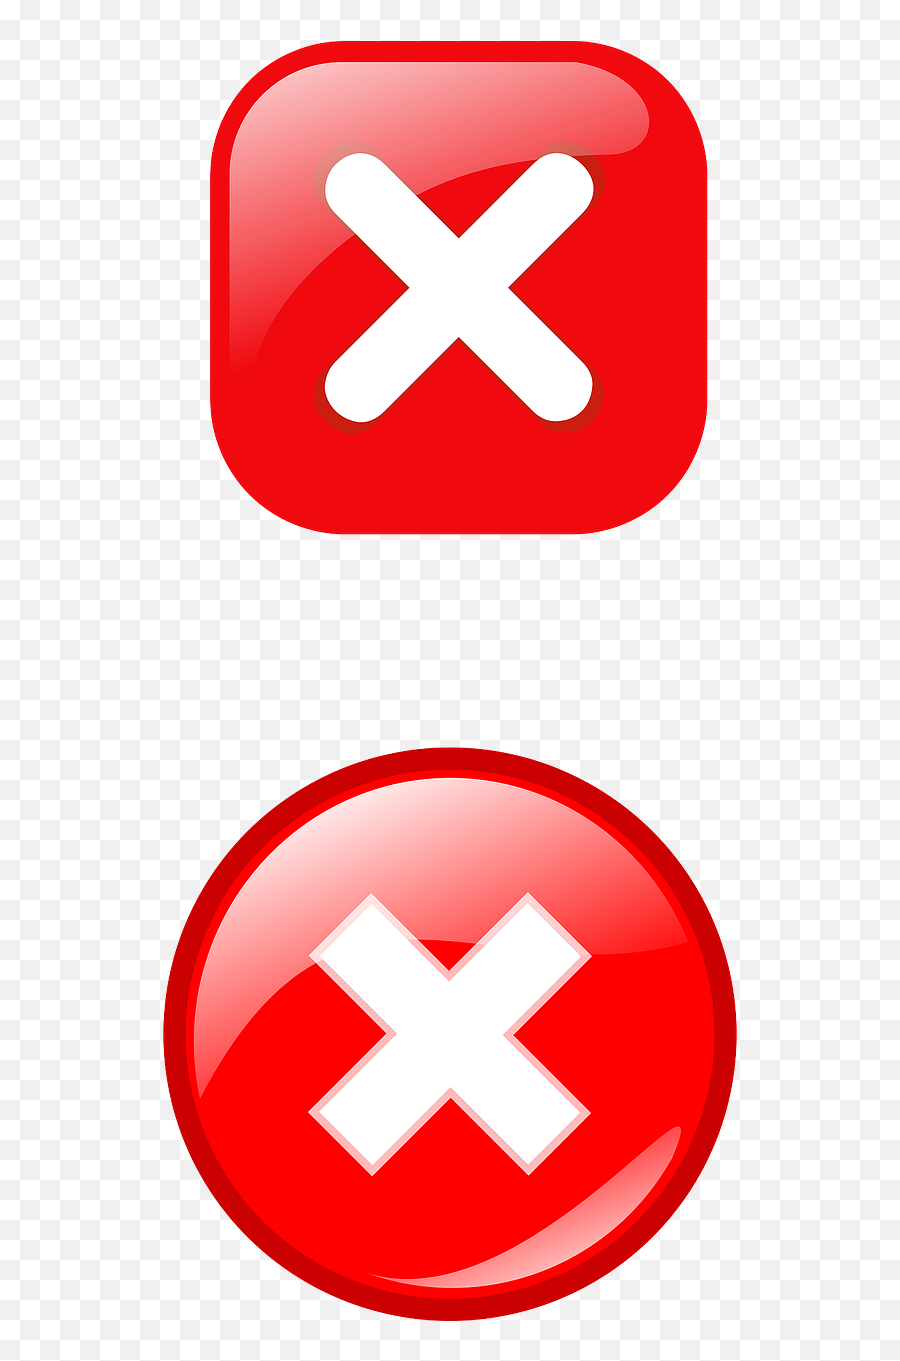 Cancel Delete Cross Check Box Public Domain Image - Freeimg Small Close Button Png,X Sign Icon